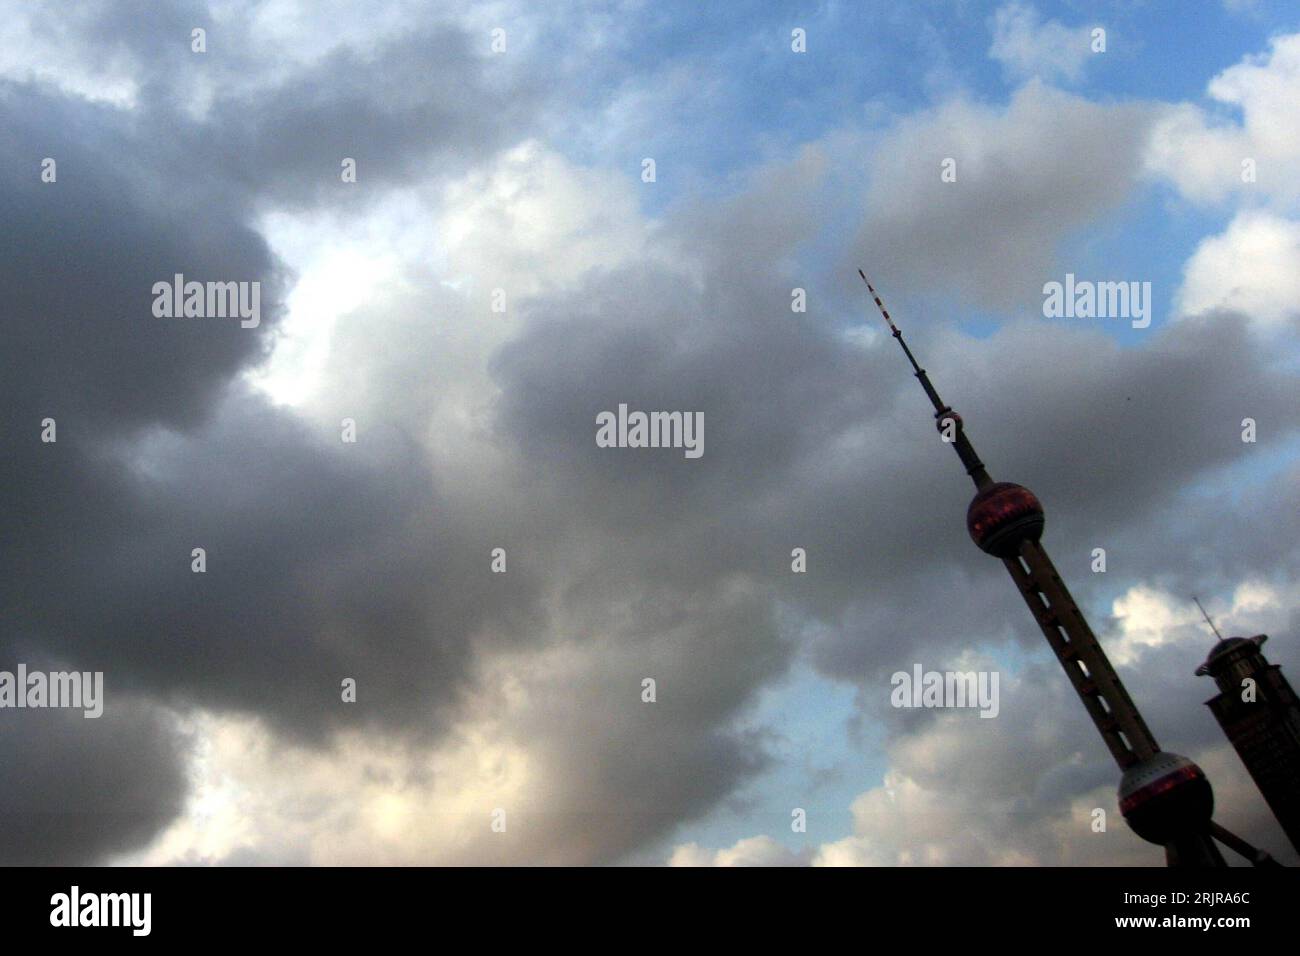 Bildnummer: 51352628  Datum: 25.07.2006  Copyright: imago/Xinhua Dunkle Wolken über dem Oriental-Fernsehturm in Shanghai - PUBLICATIONxNOTxINxCHN, Landschaft , Gebäude, außen, Außenansicht; 2006, Shanghai, Fernsehtürme, Türme, Turm, Wolke, Bewölkt, Himmel, Schräglage,  , Wolken; , quer, Kbdig, Totale, , , China,  , Wetter Stock Photo